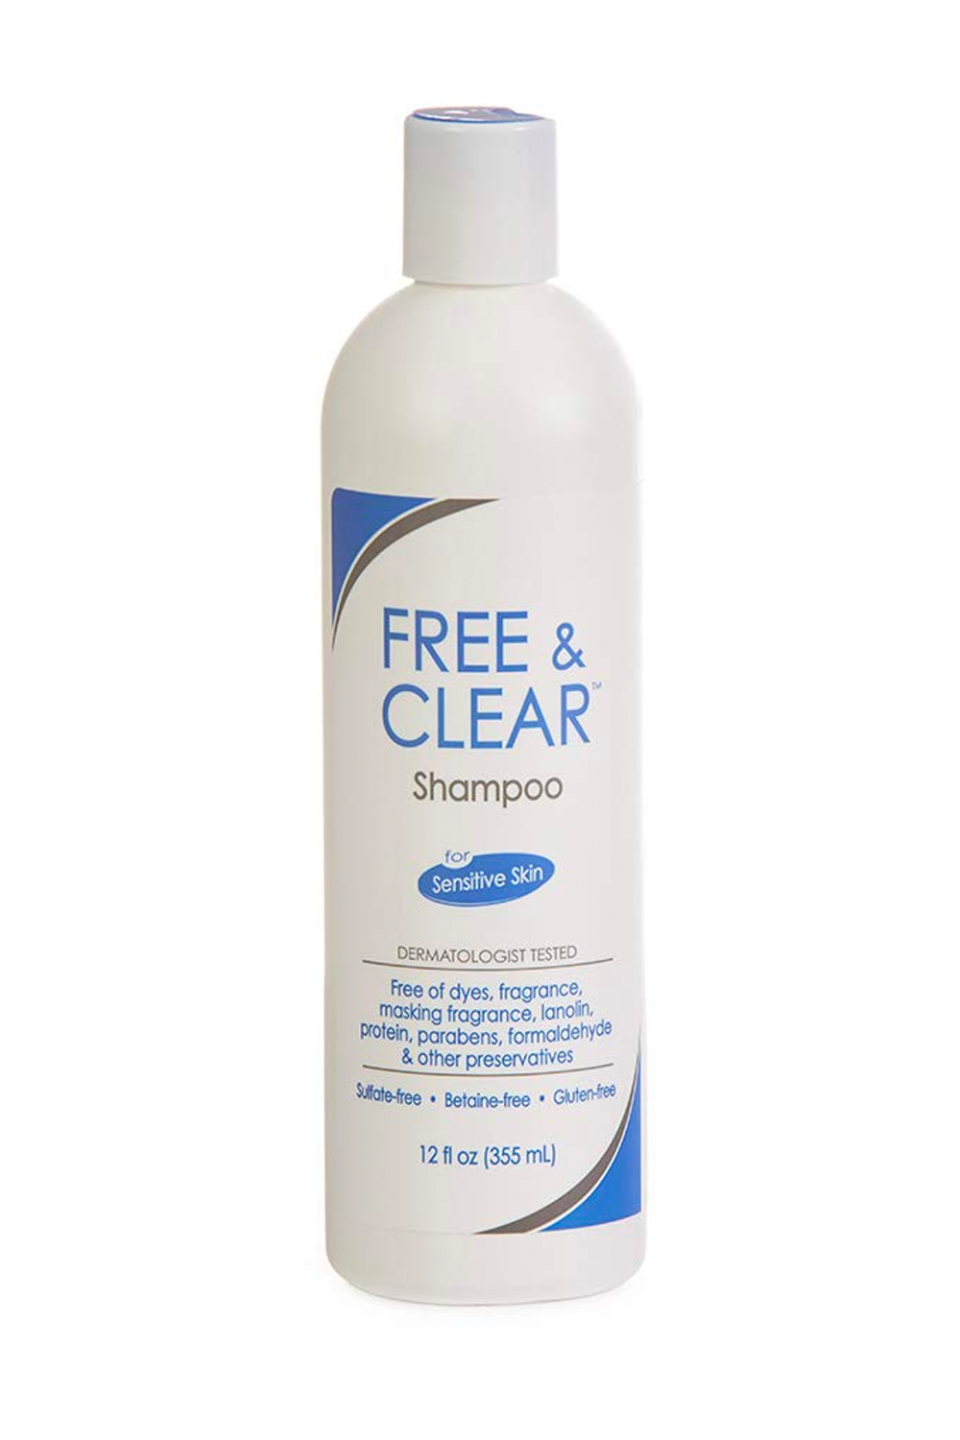 1) Vanicream Free & Clear Shampoo